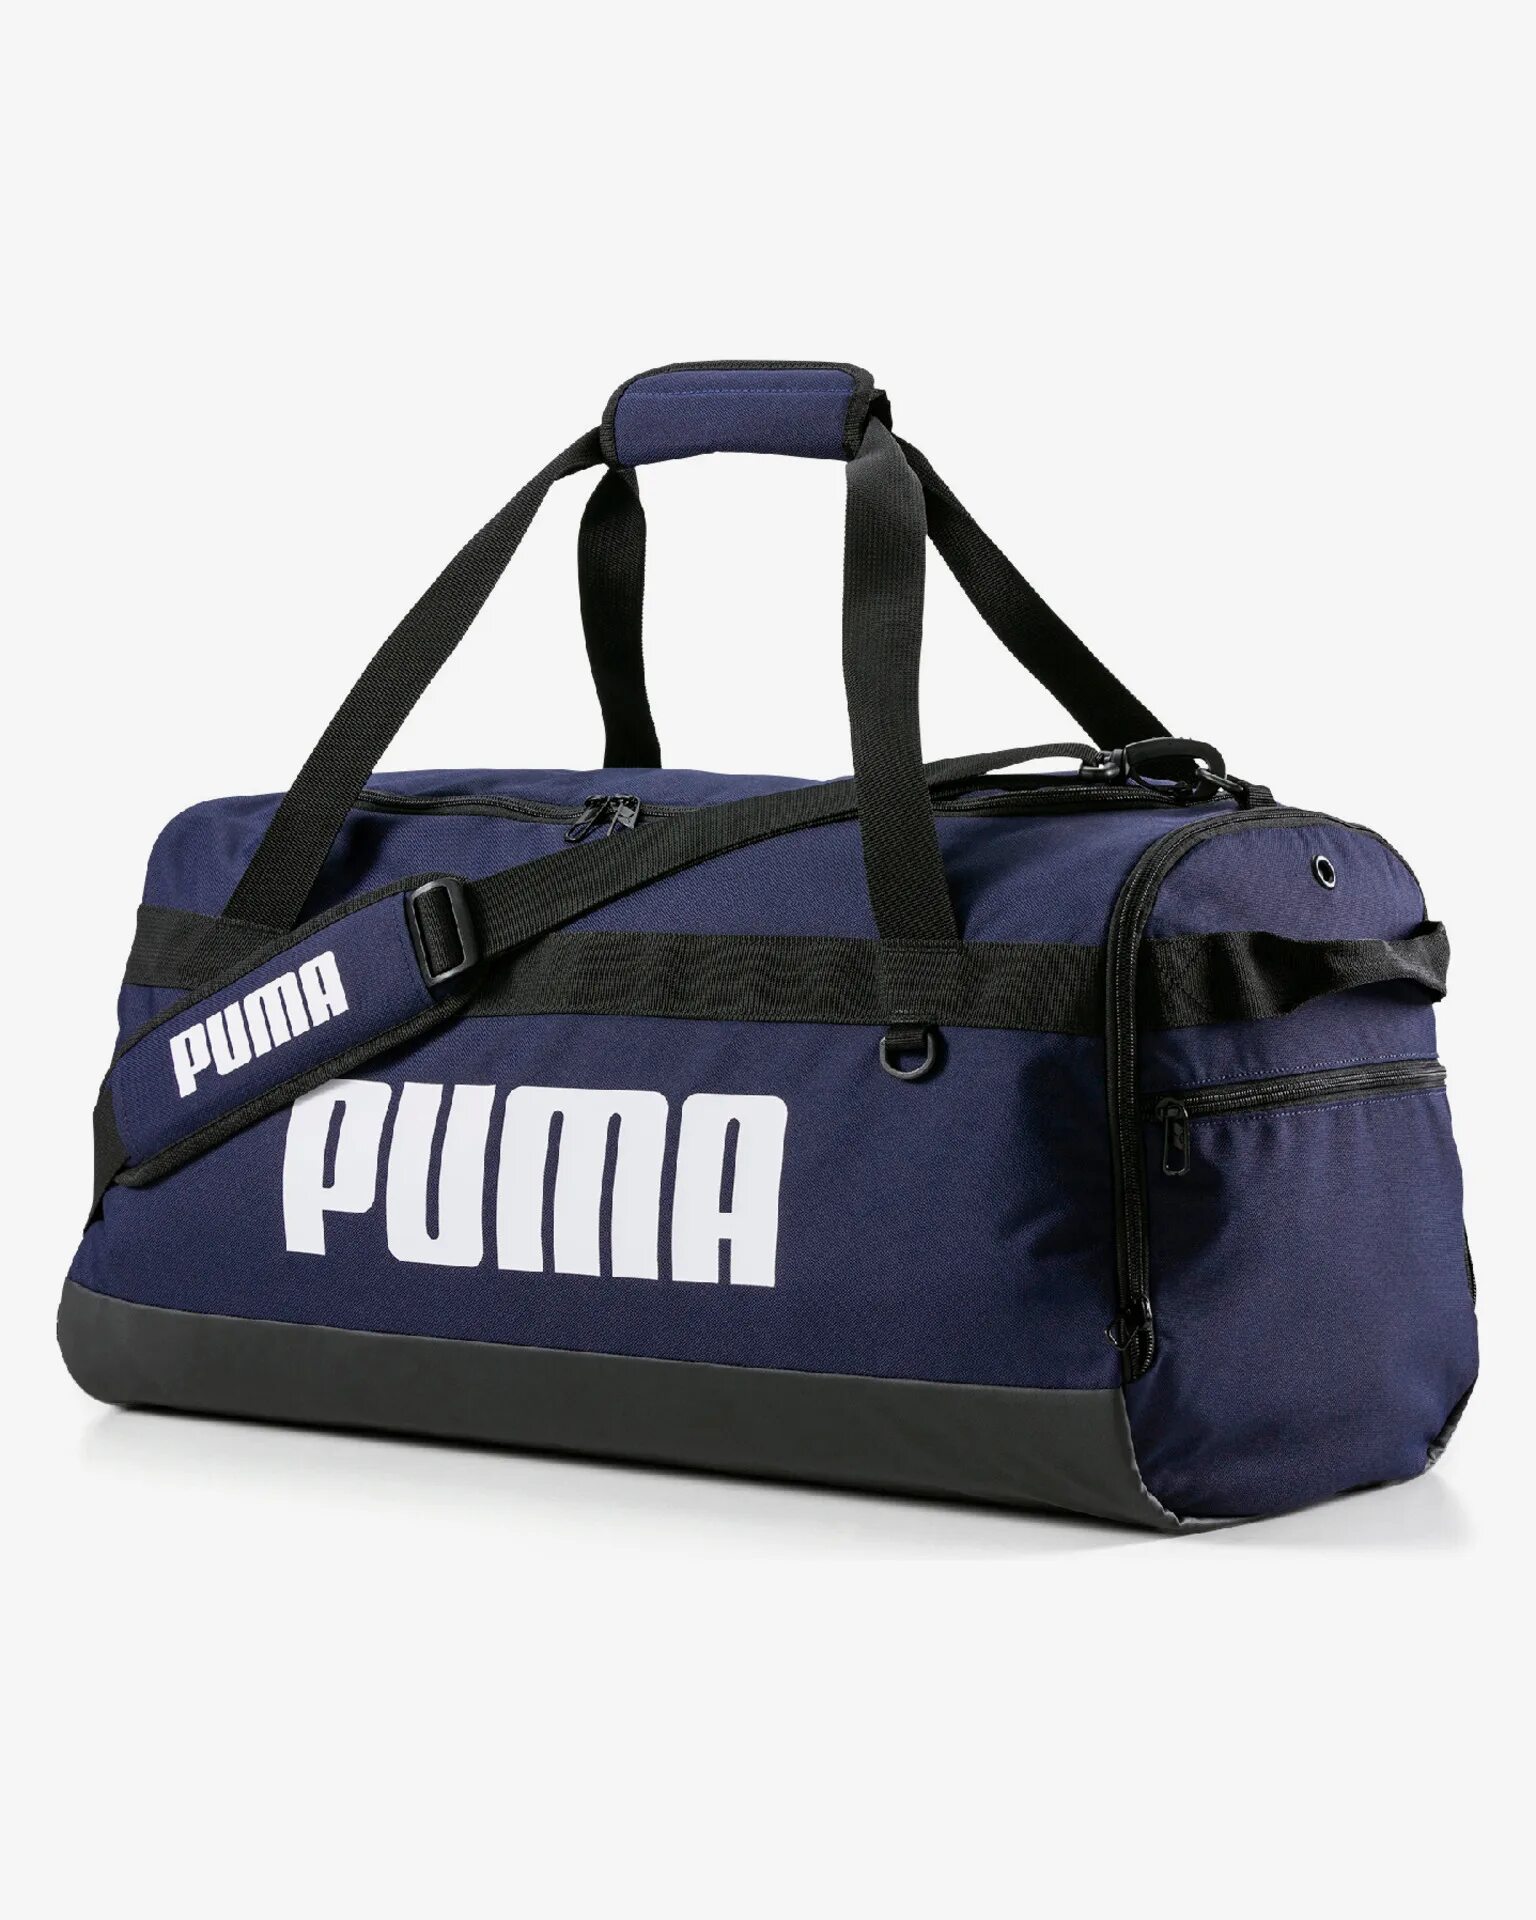 Сумка Puma Challenger Duffel Bag m. Puma Challenger Duffel. Puma Challenger Duffel Bag s. Сумка спортивная Puma Challenger duffelbag XS. Puma спортивная сумка